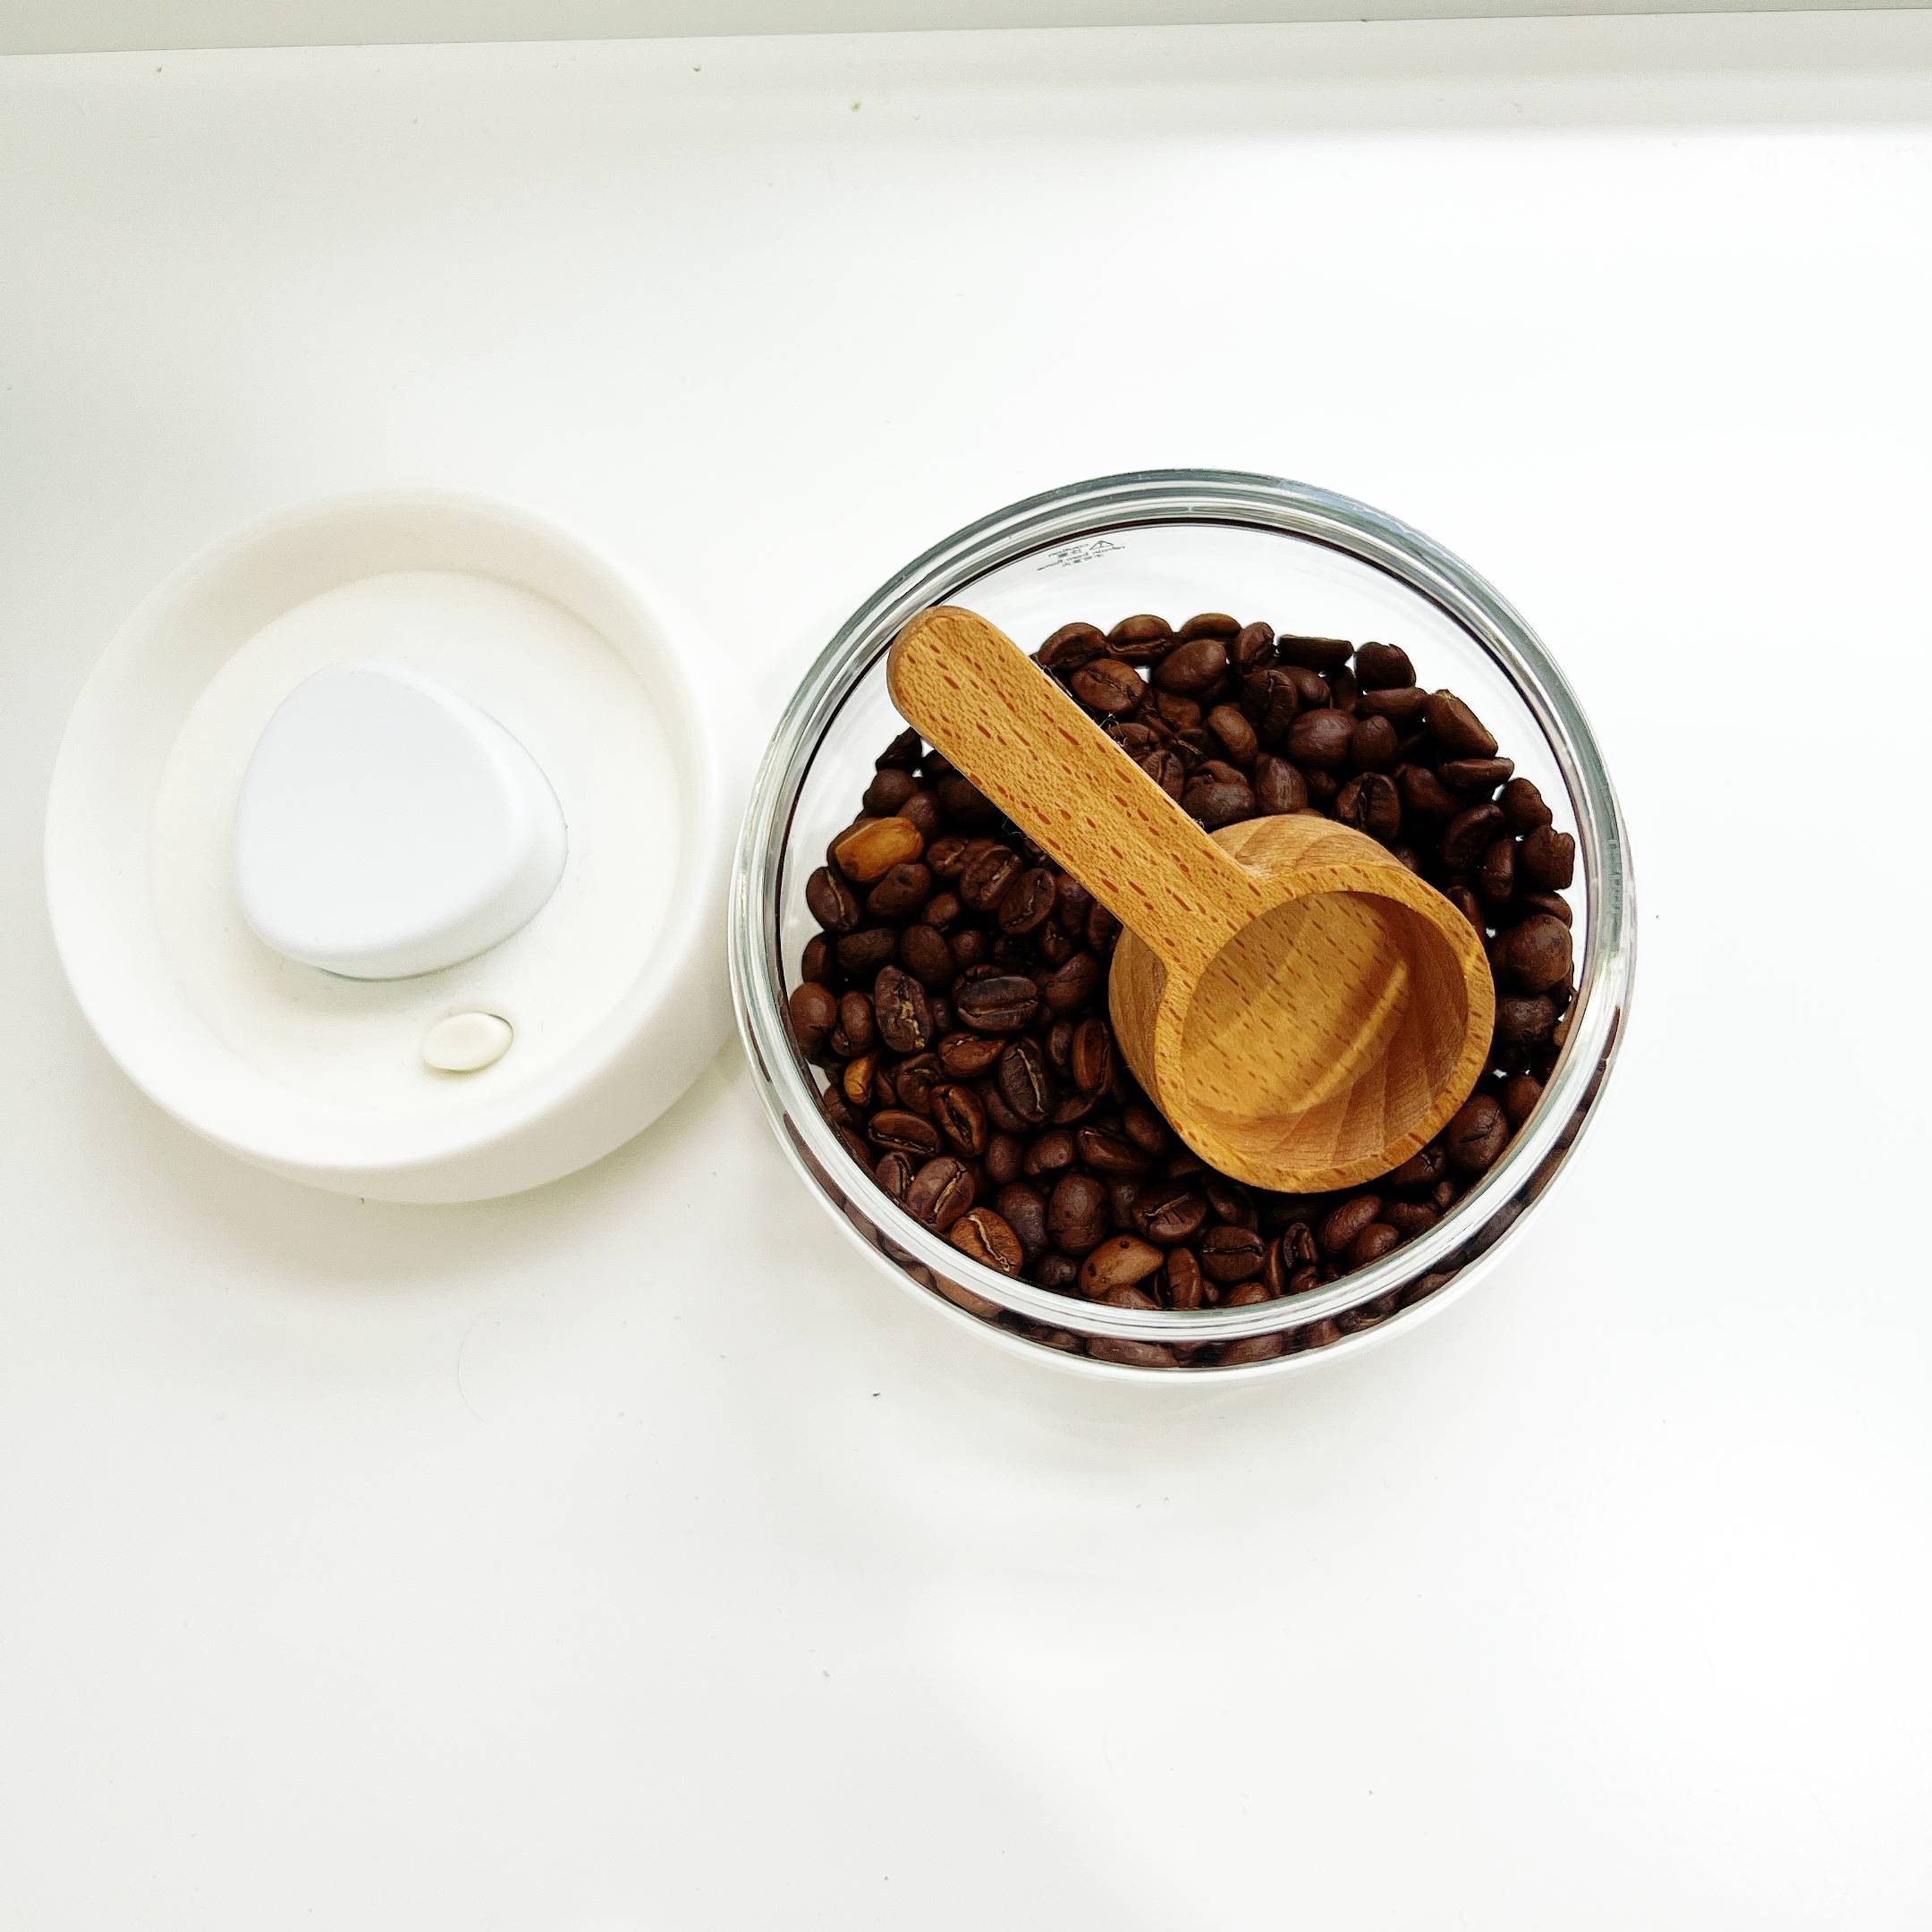 Muỗng gỗ đong cà phê, muỗng định lượng cà phê tiện lợi